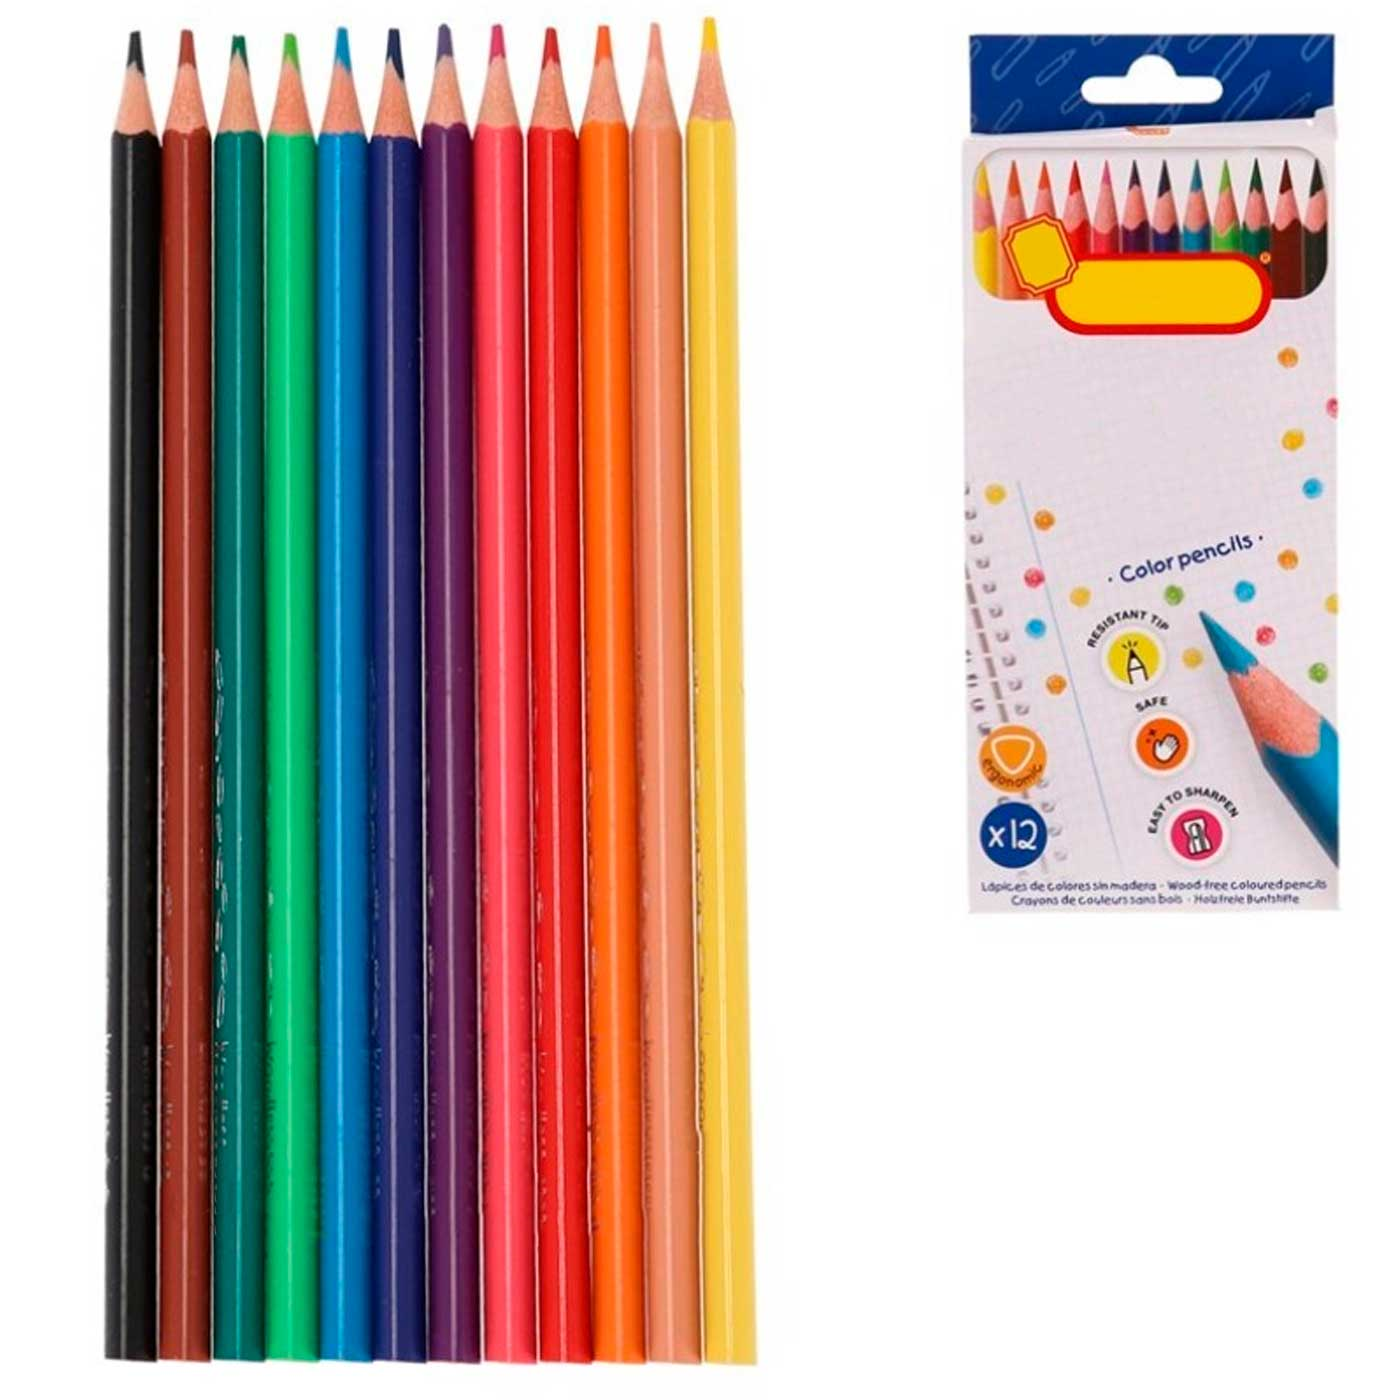 Tradineur - Caja de 24 lápices de colores para niños, material escolar,  colores vivos surtidos, ideal para colorear y dibujar